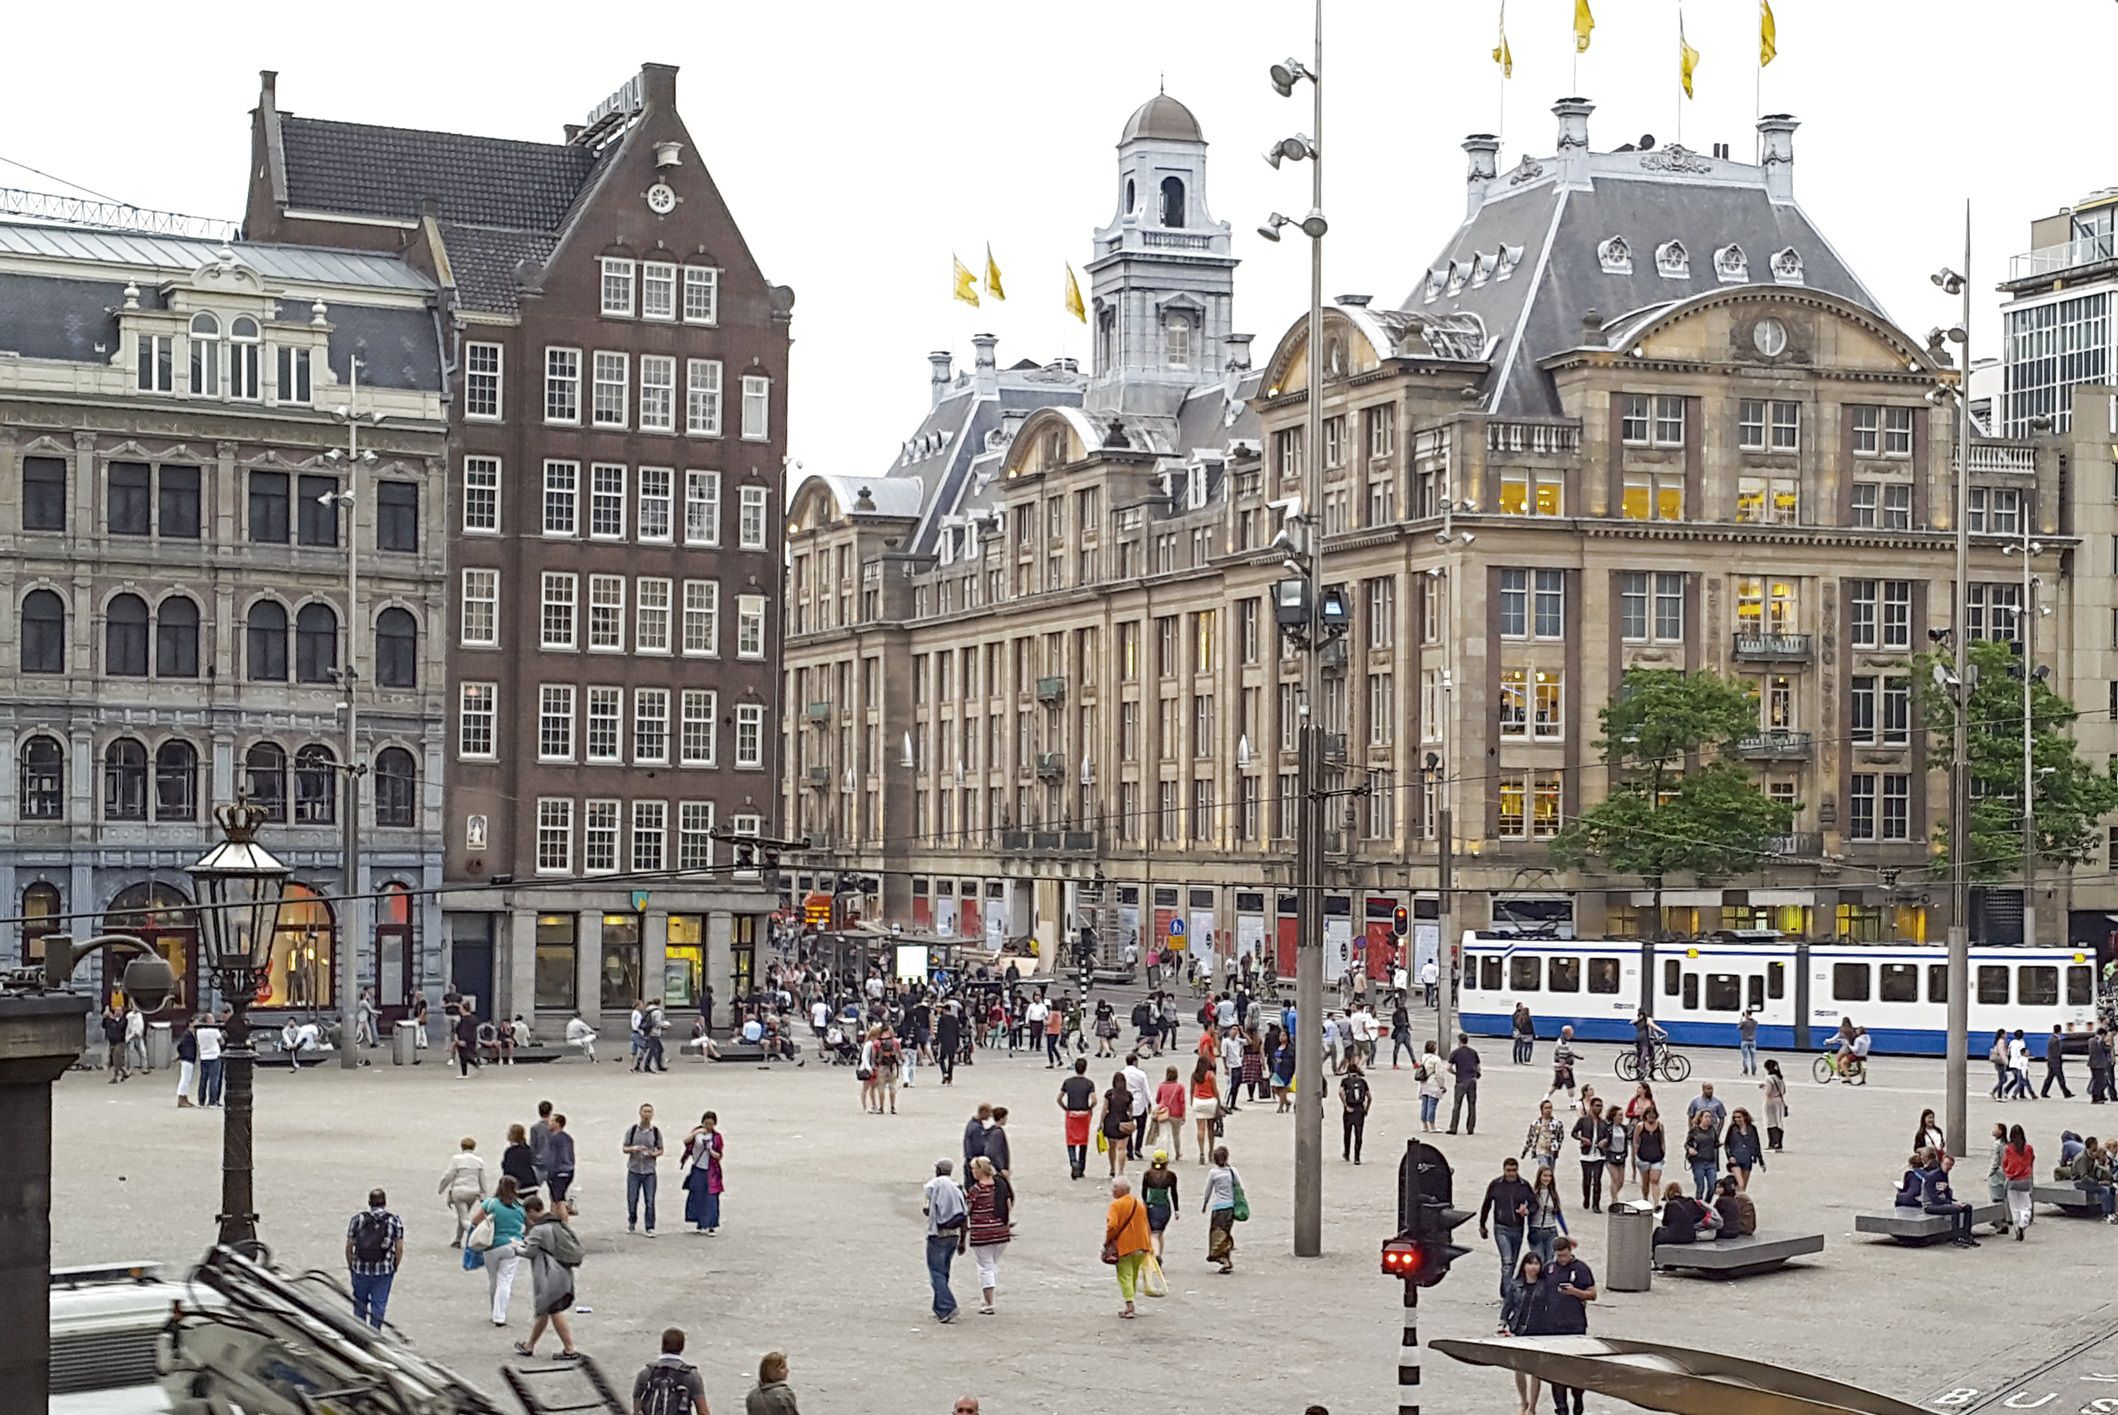 Quảng trường Rembrandtplein thực sự là chốn ăn chơi nhộn nhịp bậc nhất ở Amsterdam